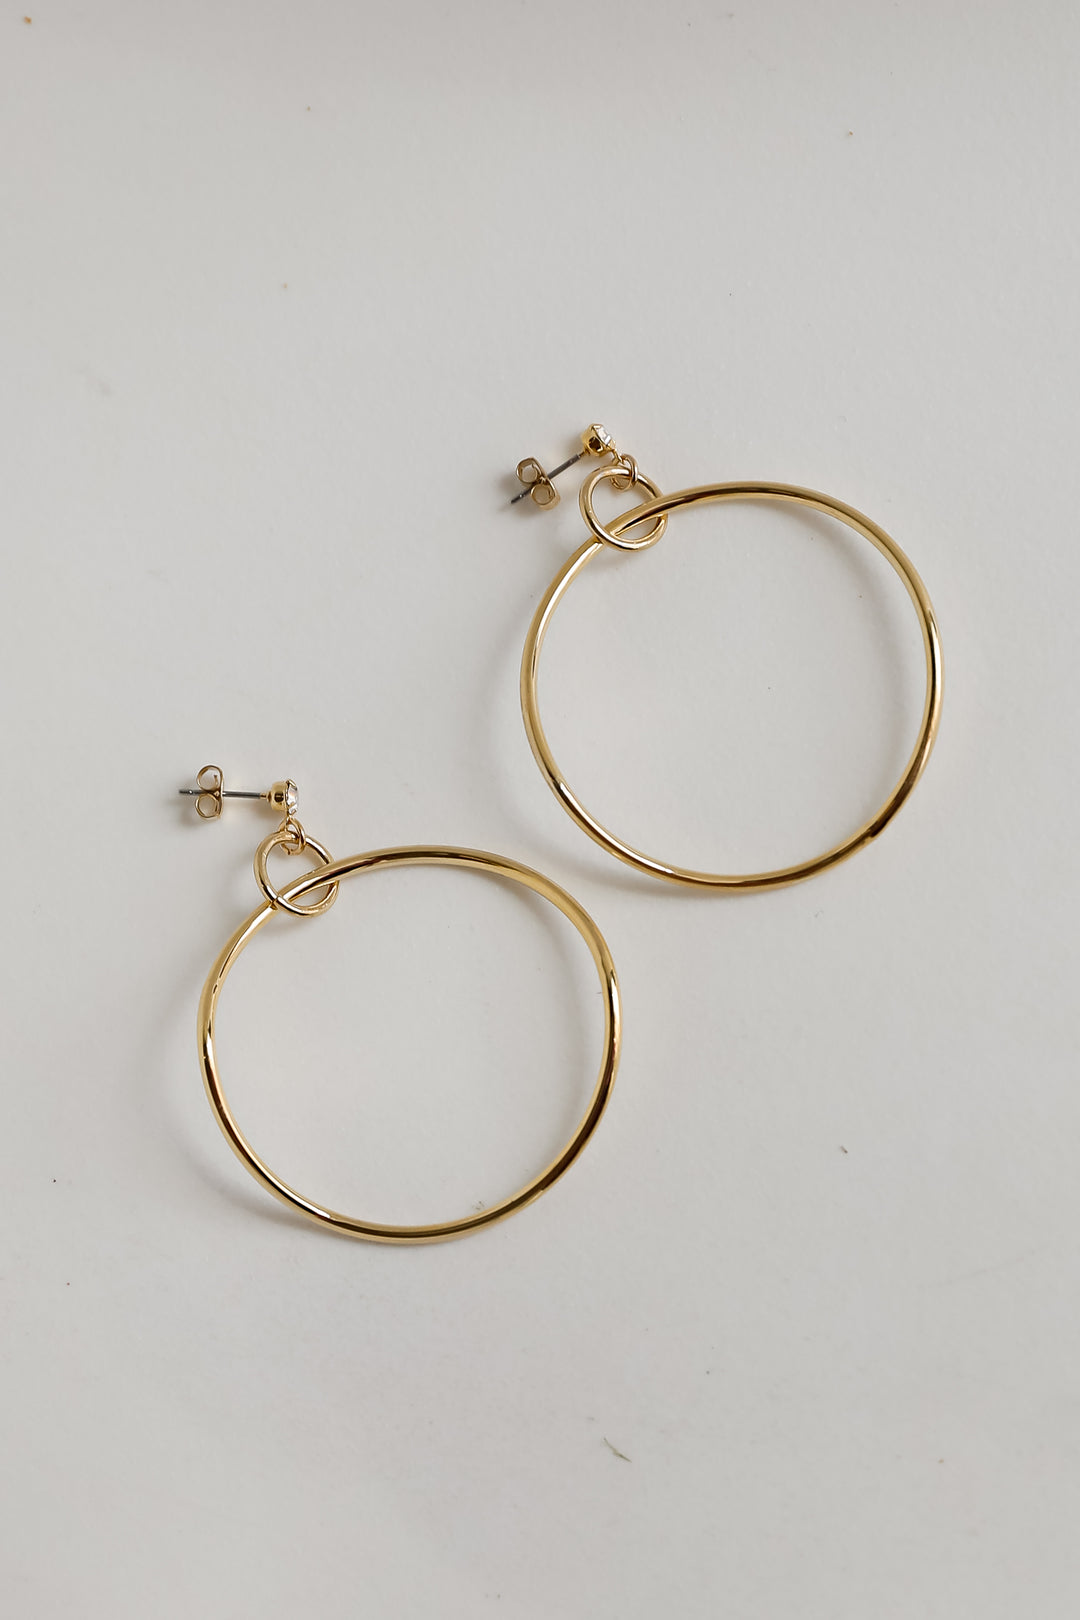 Juliette Gold Circle Statement Earrings dainty jewelry